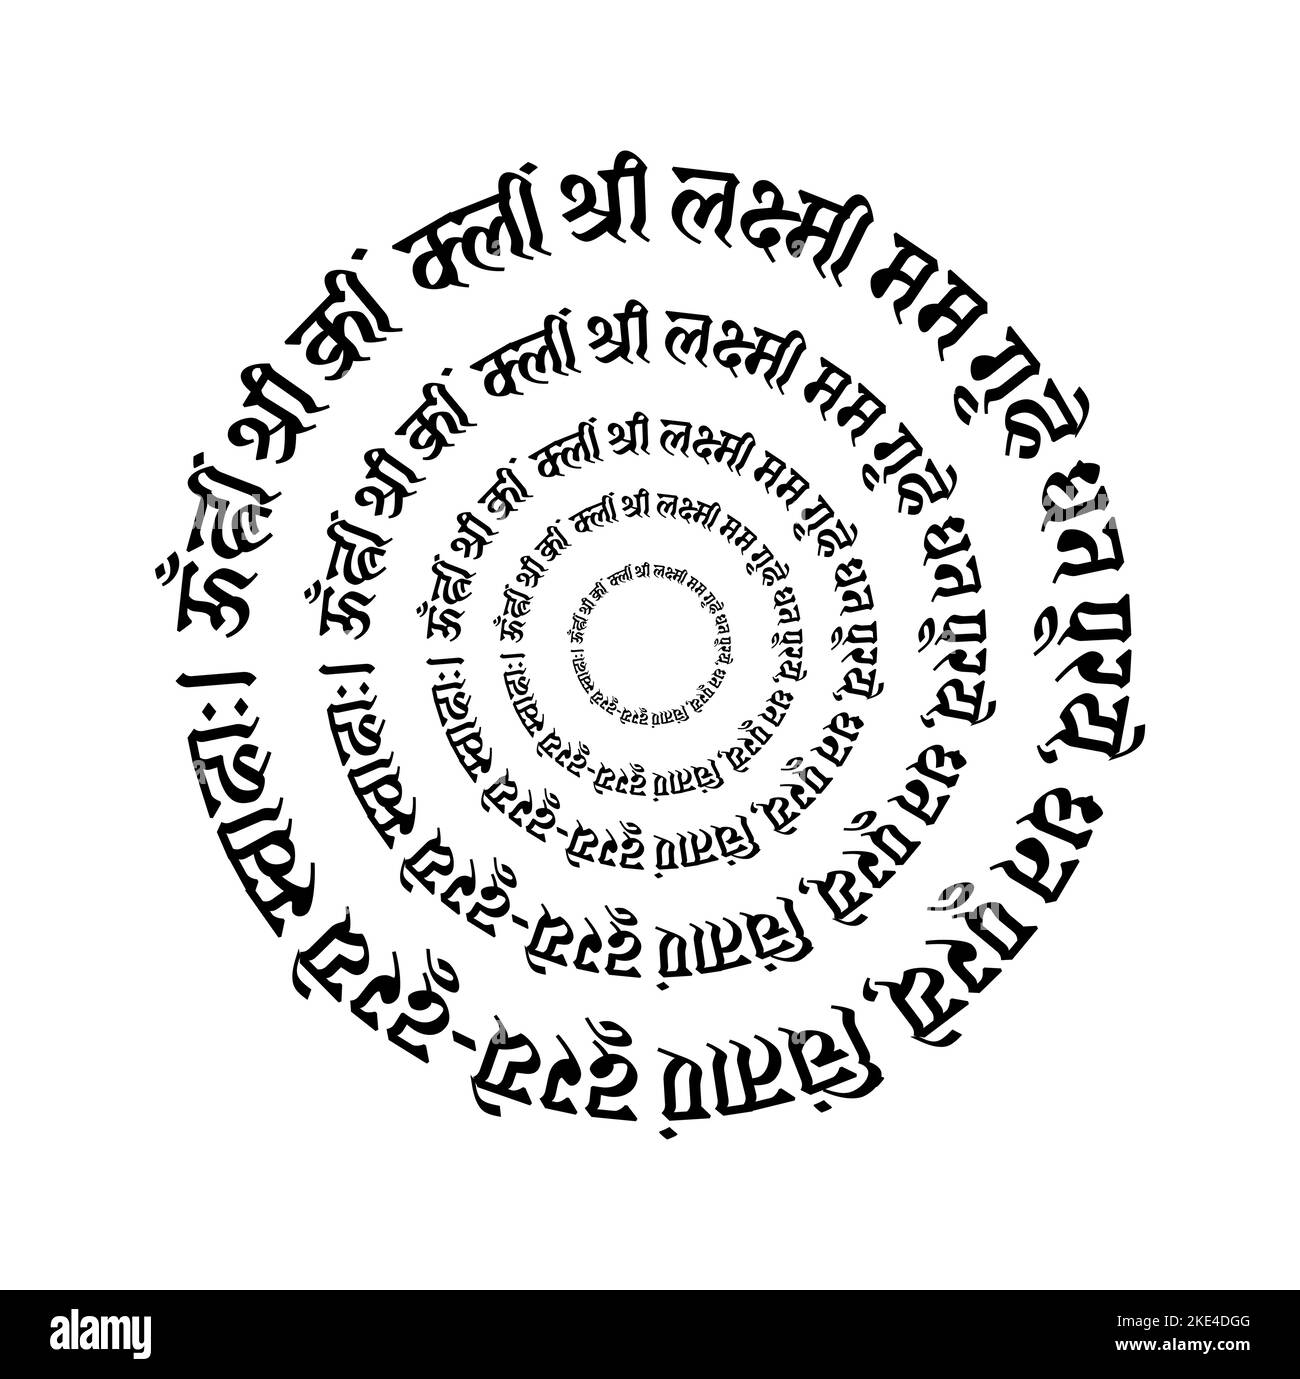 Lord Mahalaxmi mantra in Sanskrit Script. laxmi praise mantra. Stock Vector